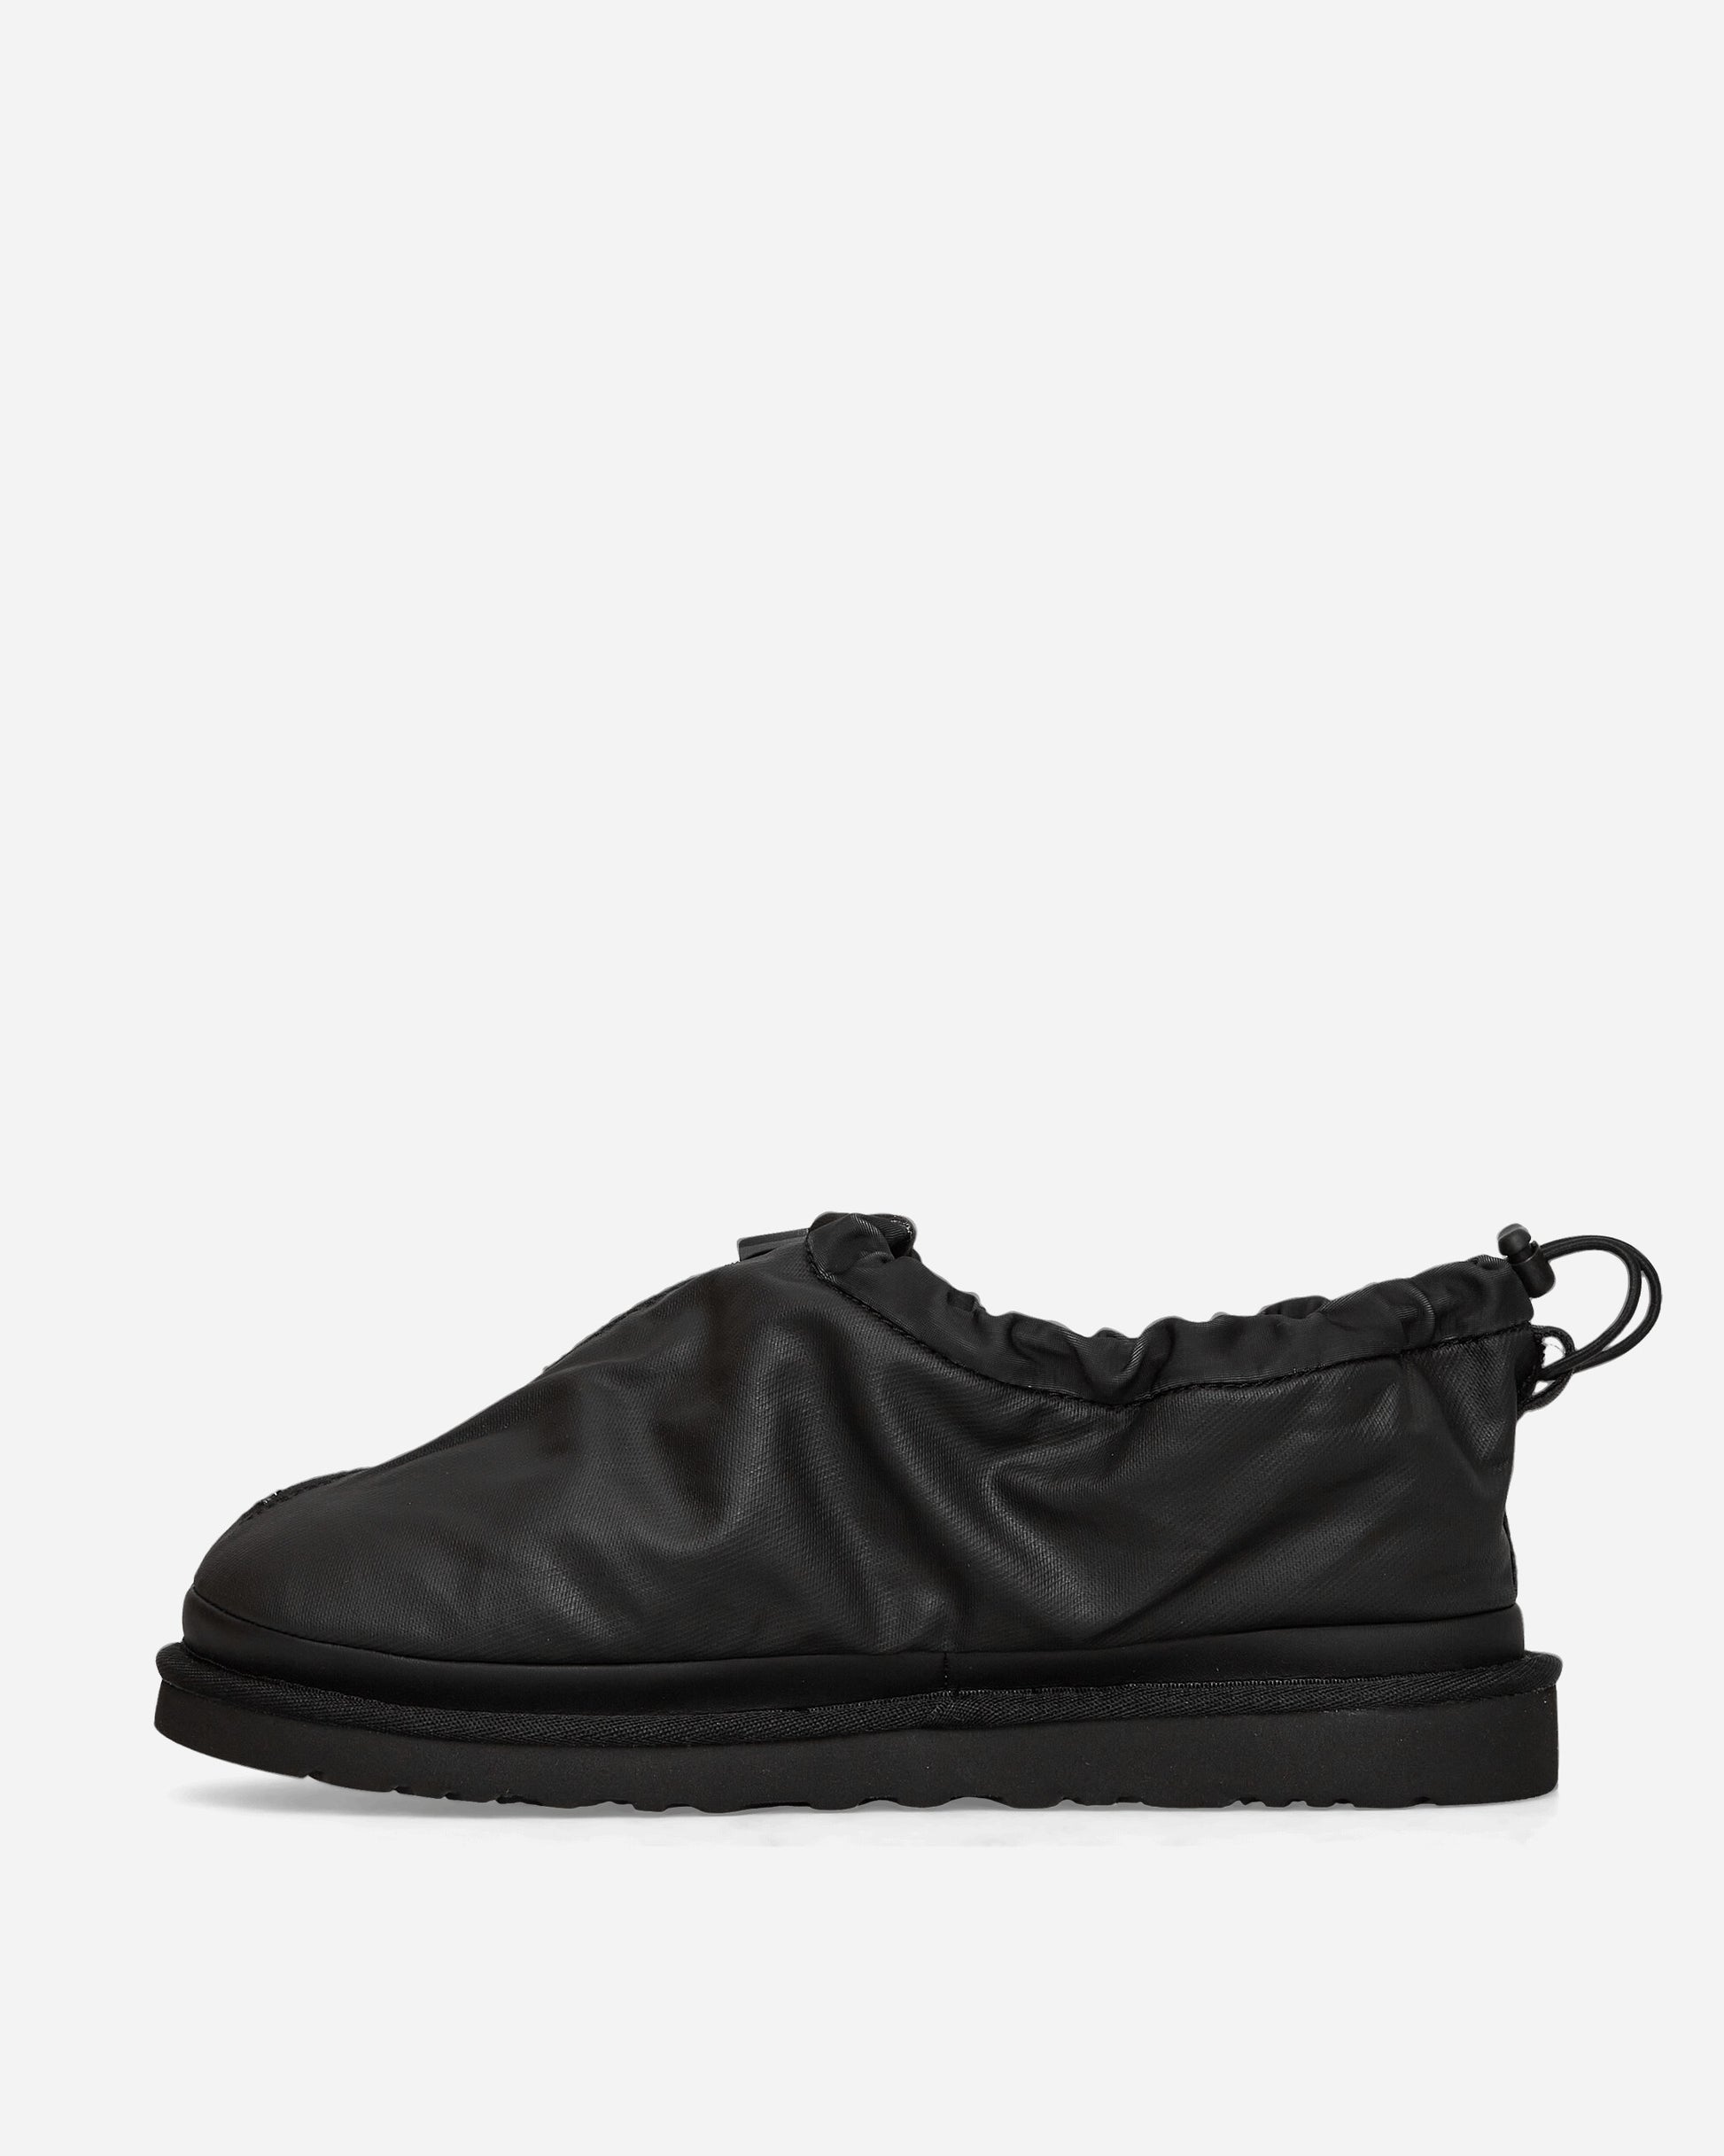 UGG M Tasman Shroud Zip Black Sandals and Slides Sandals and Mules 1144114 BLK